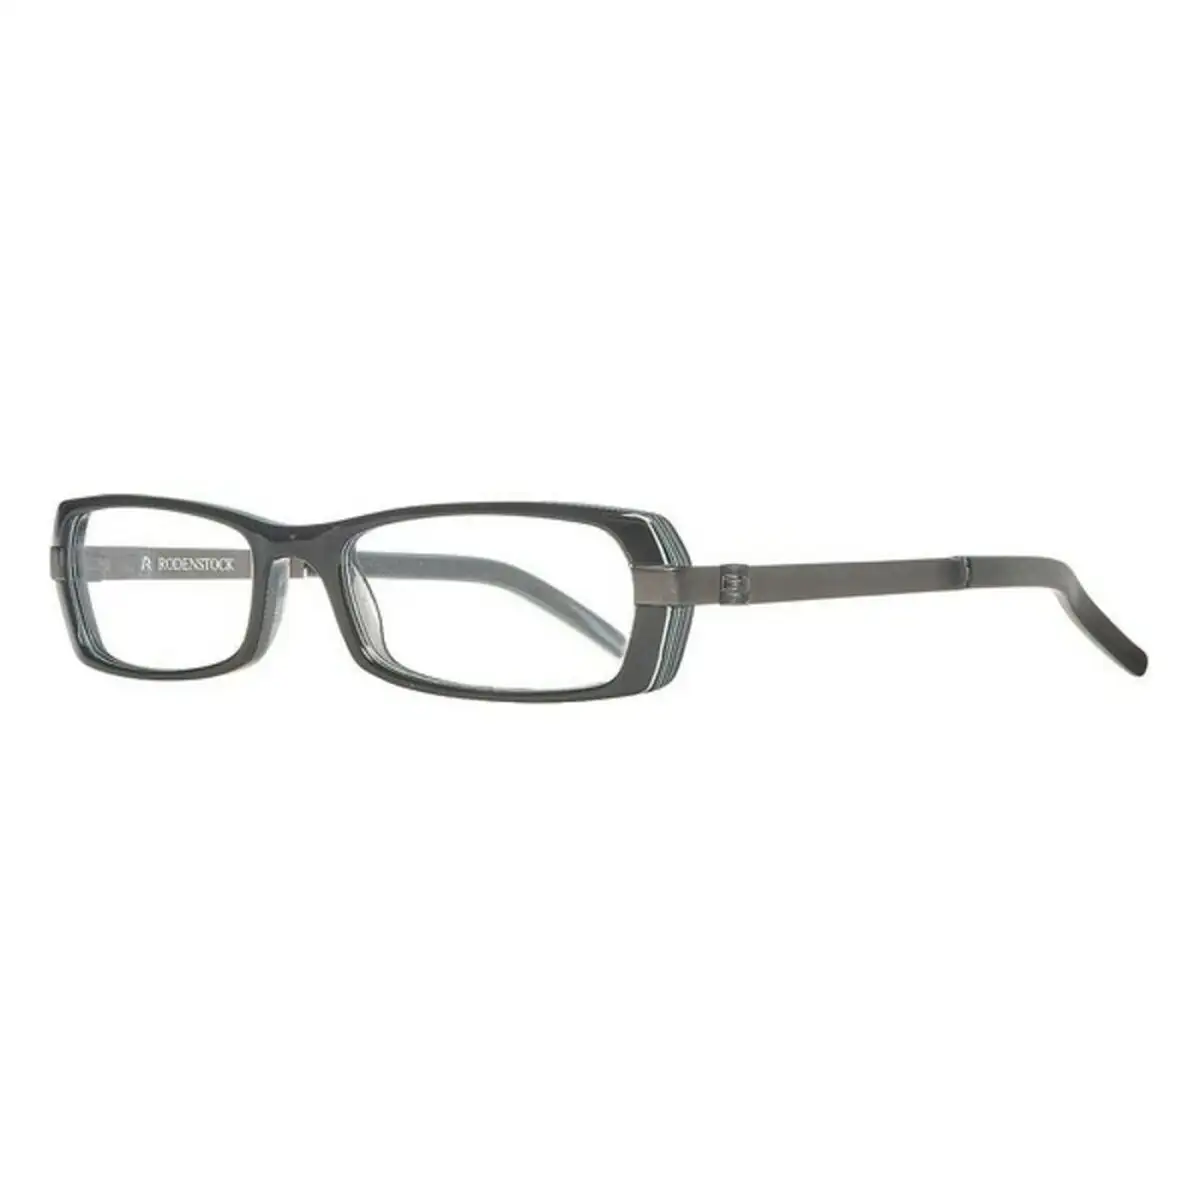 Monture de lunettes femme rodenstock r5203 a noir o 48 mm _7425. DIAYTAR SENEGAL - Là où Chaque Achat a du Sens. Explorez notre gamme et choisissez des produits qui racontent une histoire, du traditionnel au contemporain.